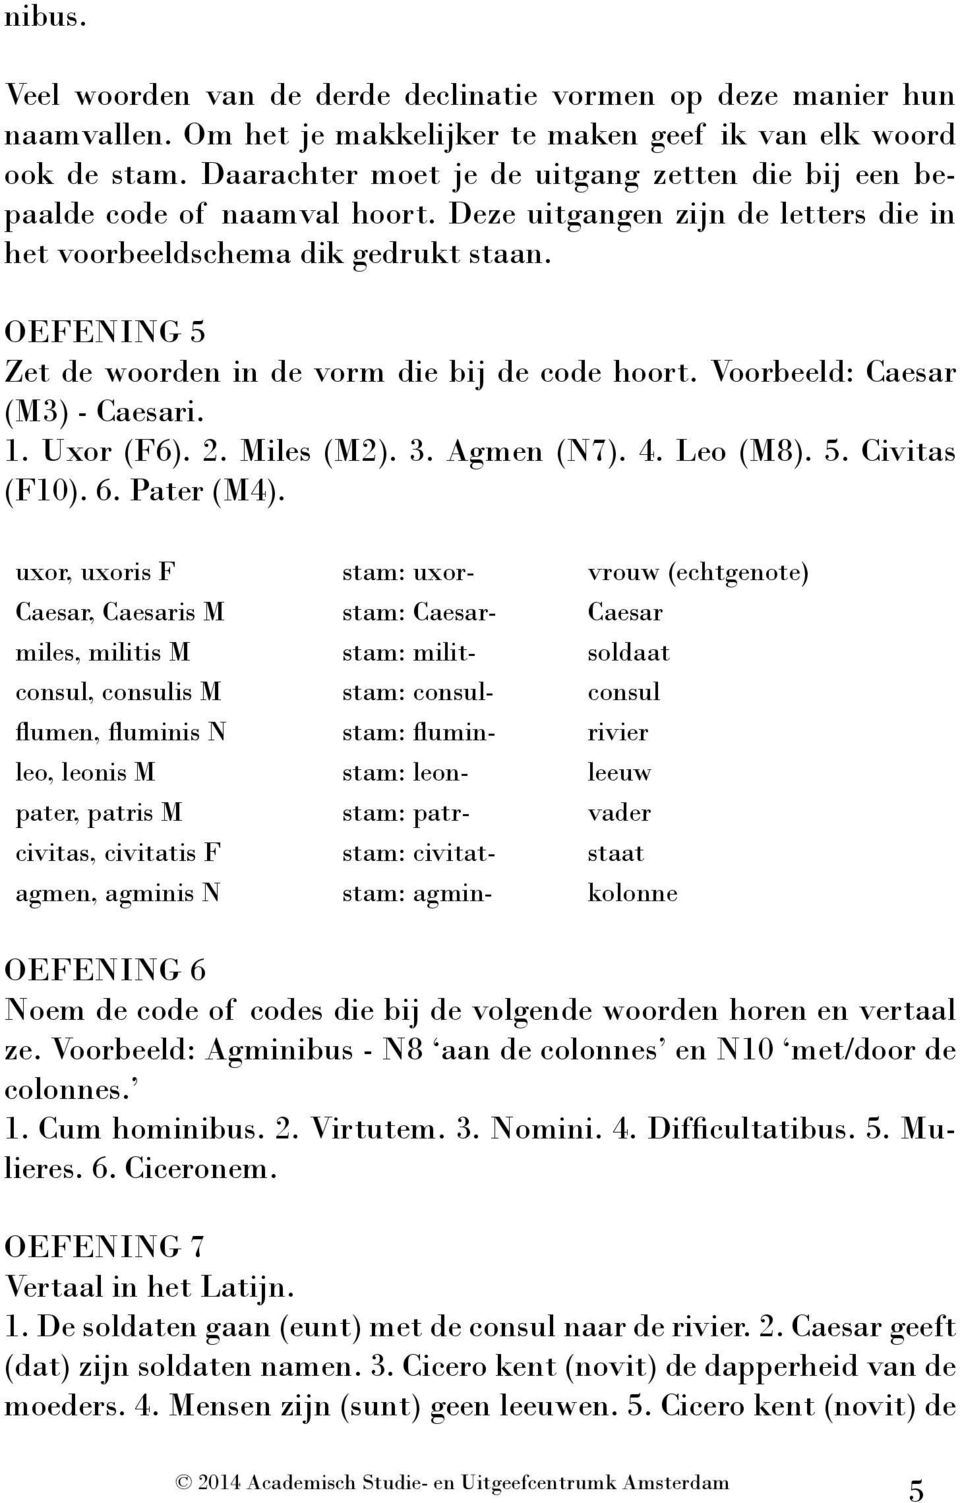 OEFENING 5 Zet de woorden in de vorm die bij de code hoort. Voorbeeld: Caesar (M3) - Caesari. 1. Uxor (F6). 2. Miles (M2). 3. Agmen (N7). 4. Leo (M8). 5. Civitas (F10). 6. Pater (M4).